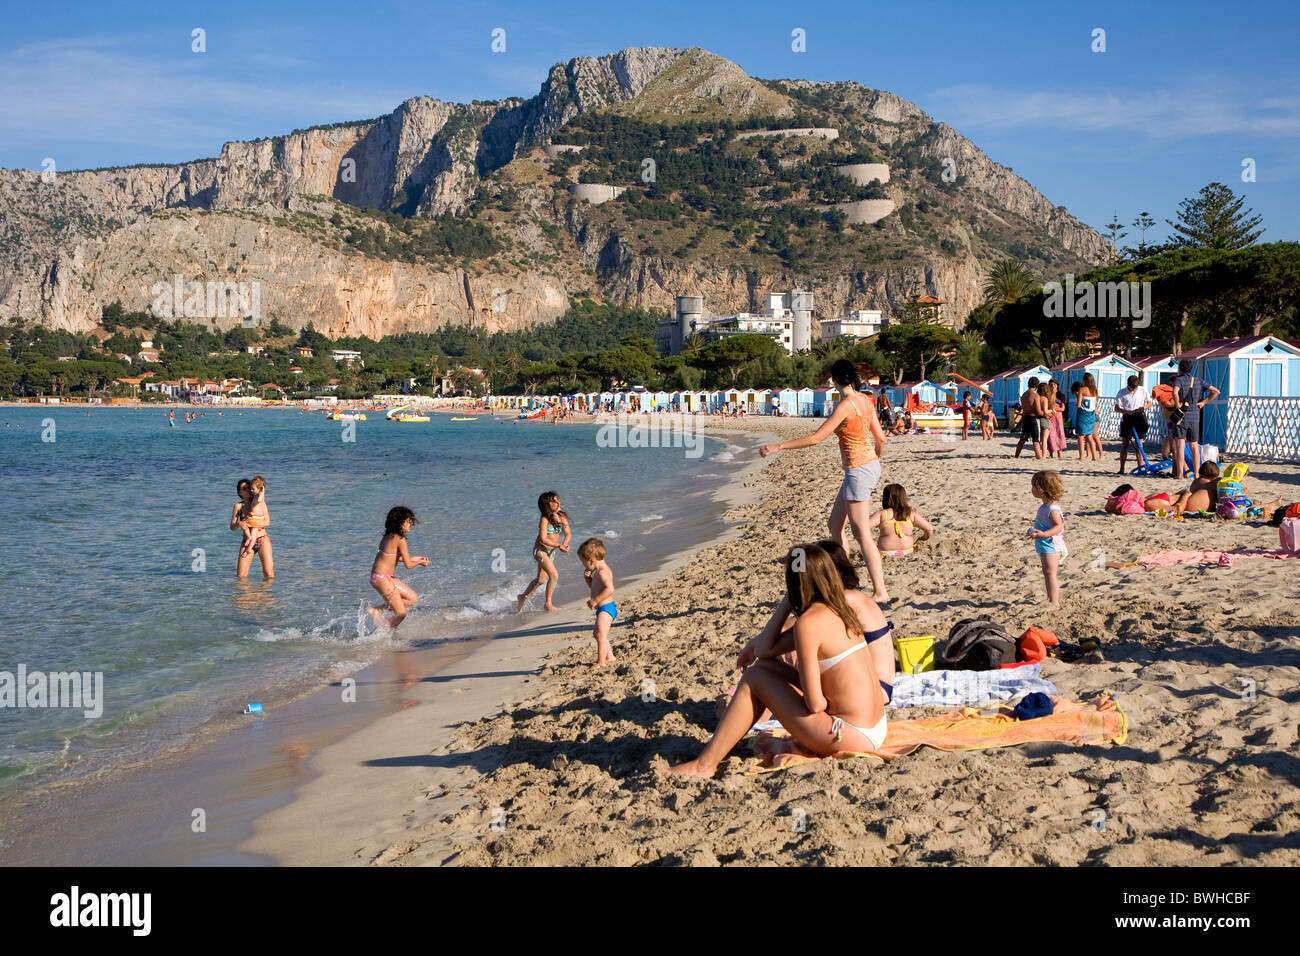 Beach of Mondello near Palermo, Palermo, Sicily, Italy, Europe Stock Photo